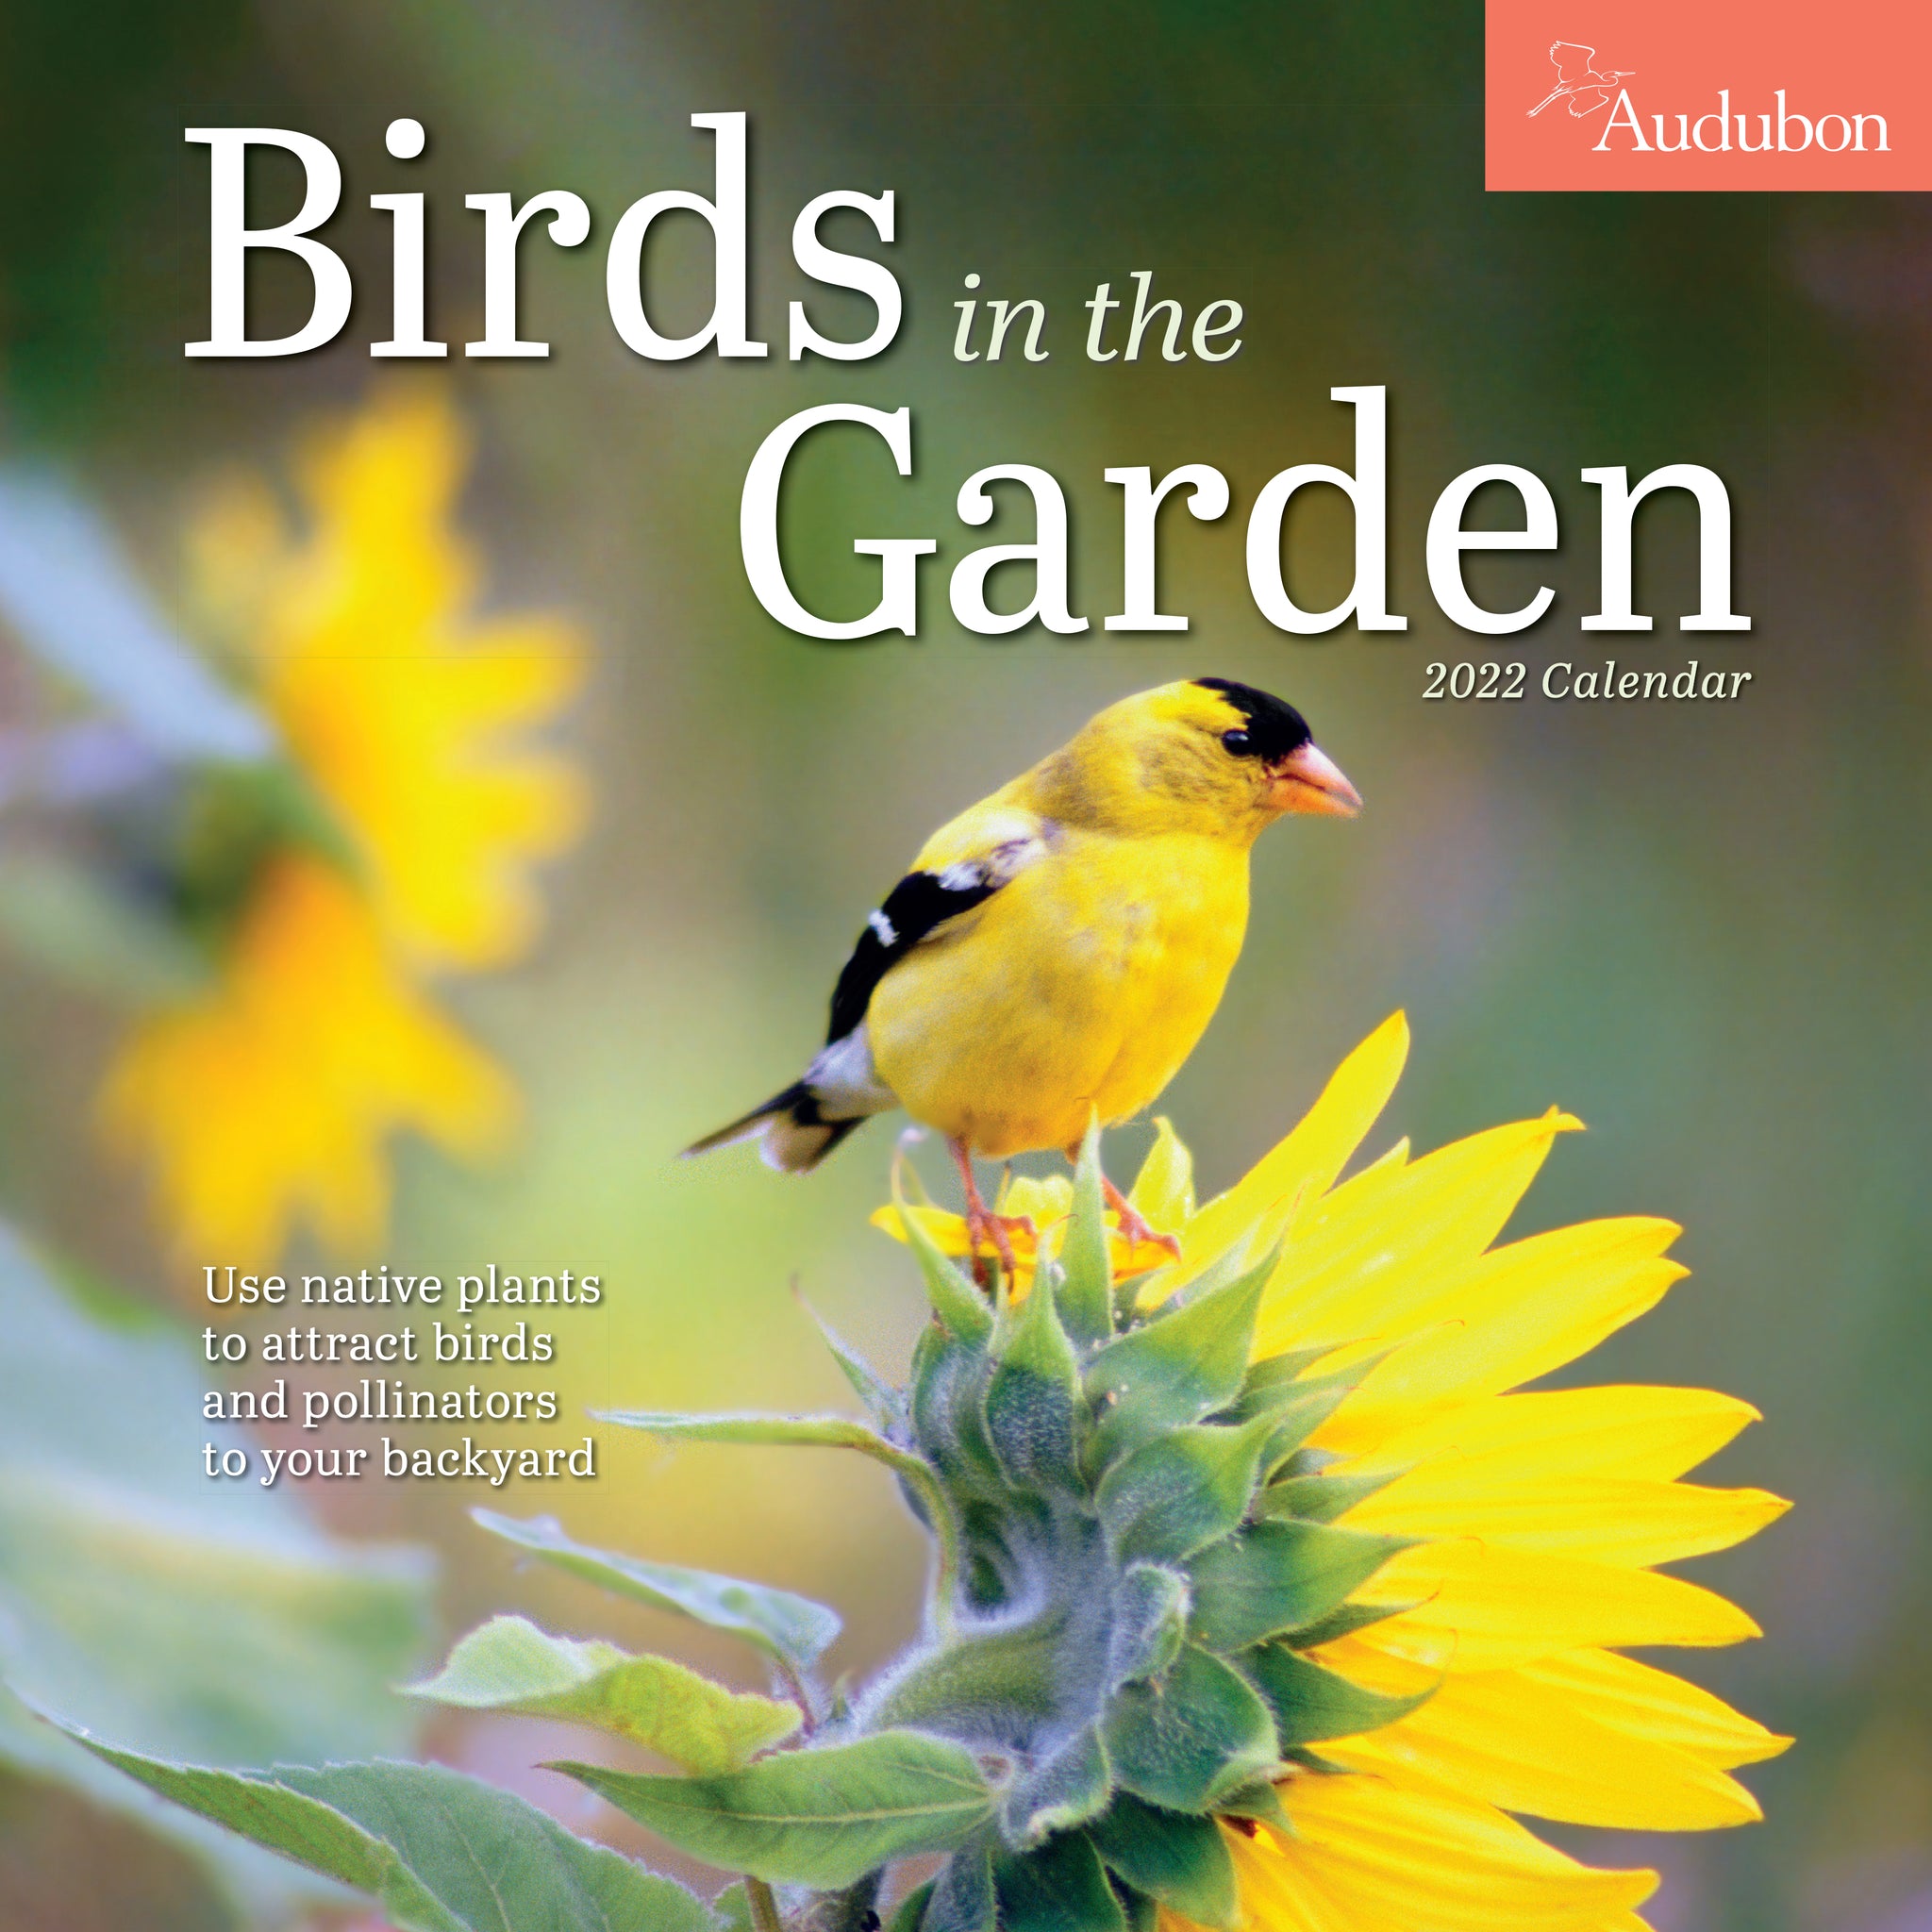 Birds　Audubon　in　Wall　2022　the　Garden　Pickwick　Calendar　–　Bookshop